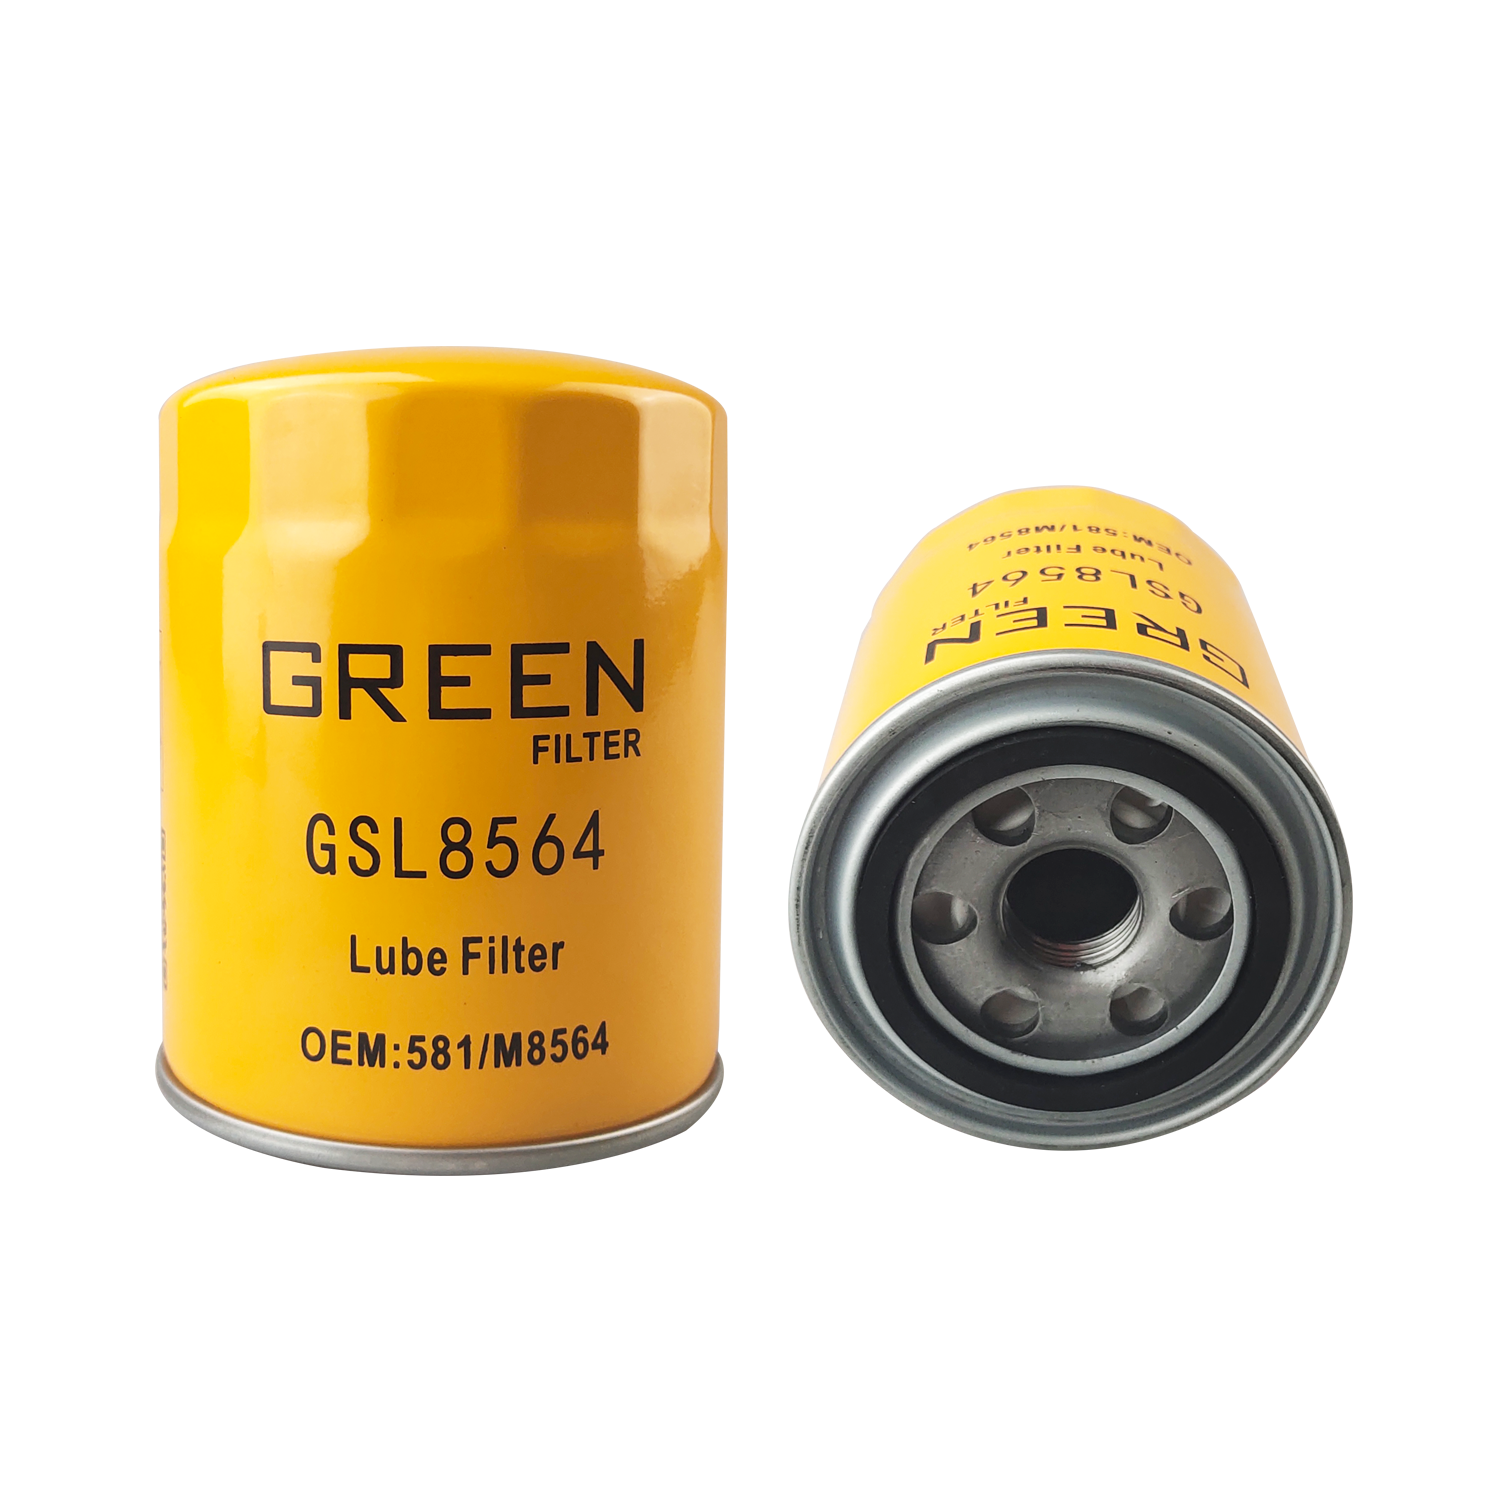 Oil Filter Manufacturer GSL8564